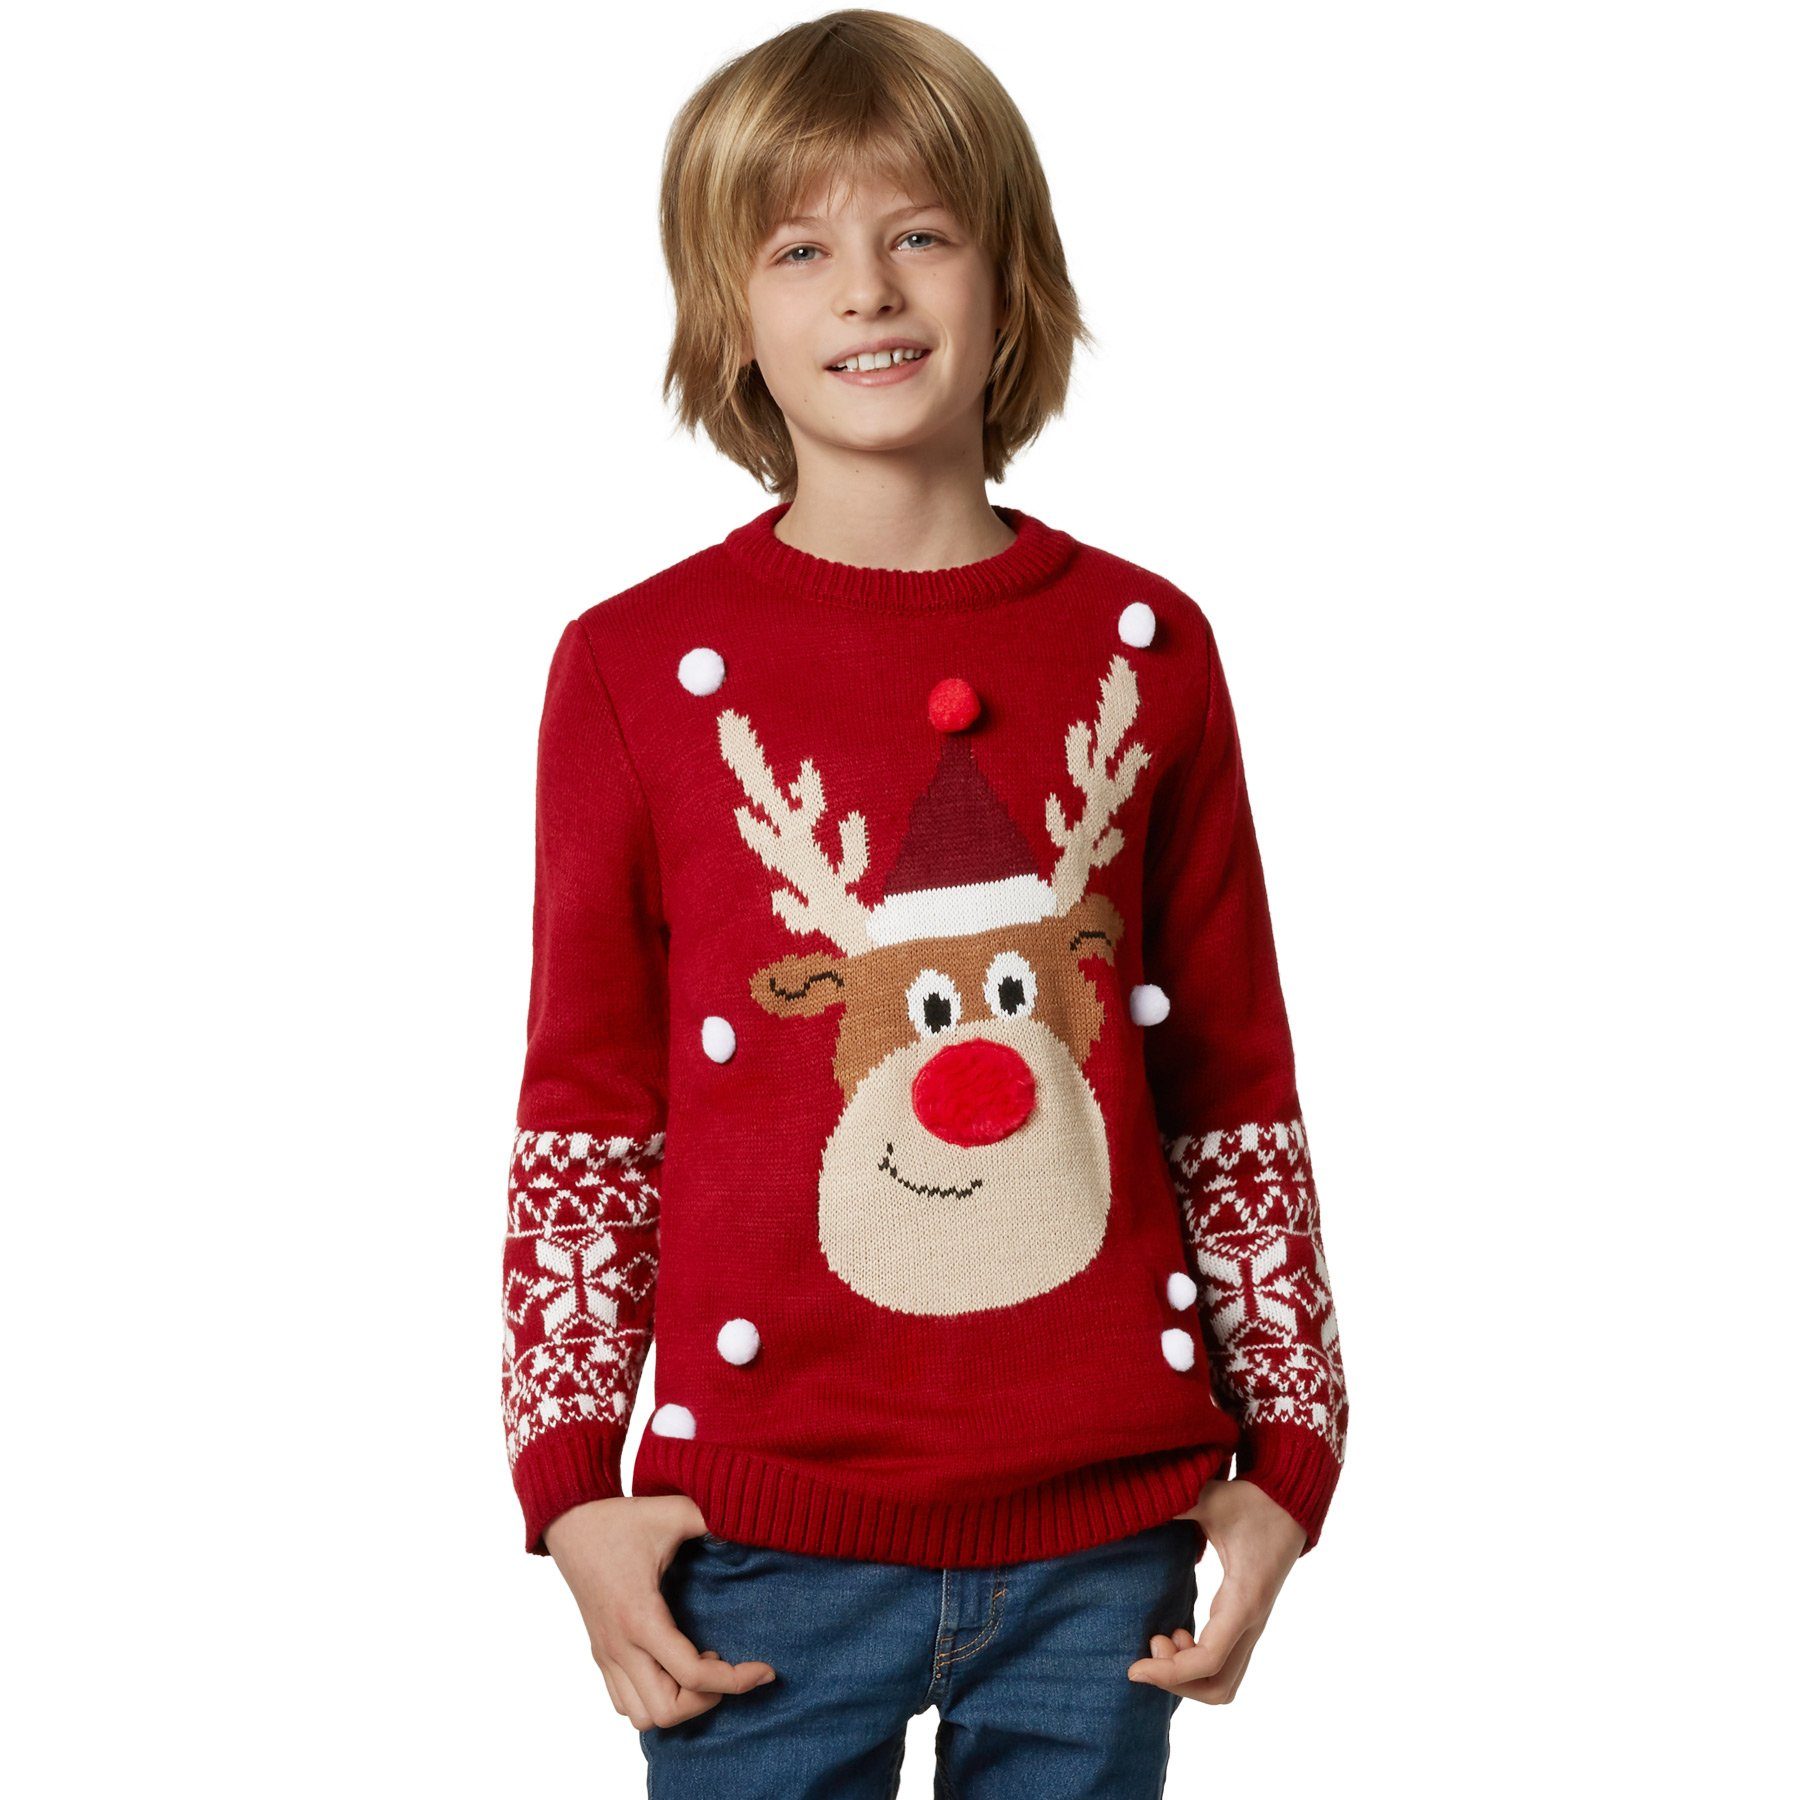 Mädchen Weihnachtspullover » Christmas Sweater online kaufen | OTTO